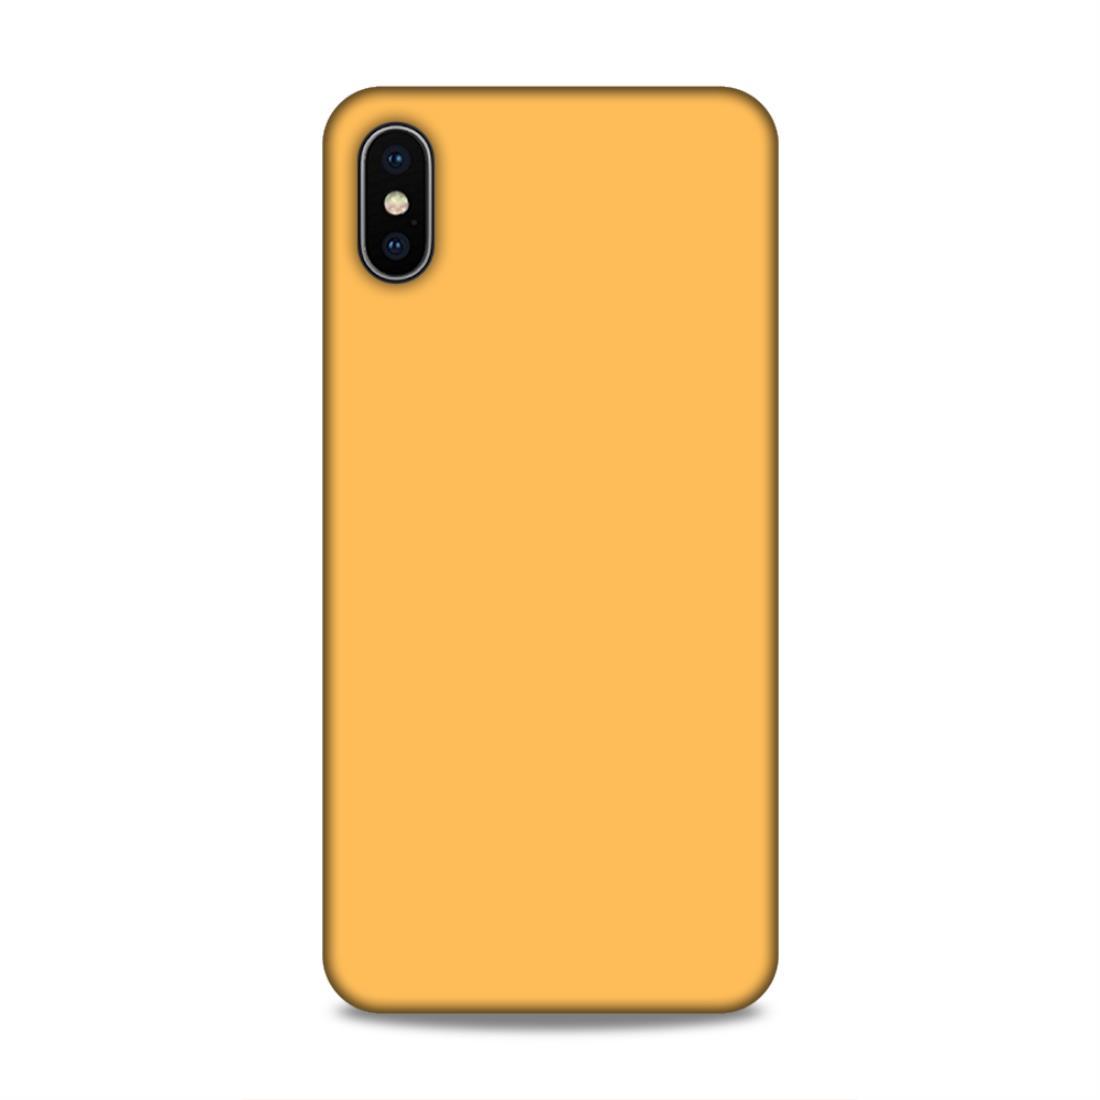 Peach Classic Plain iPhone XS Max Phone Cover Case